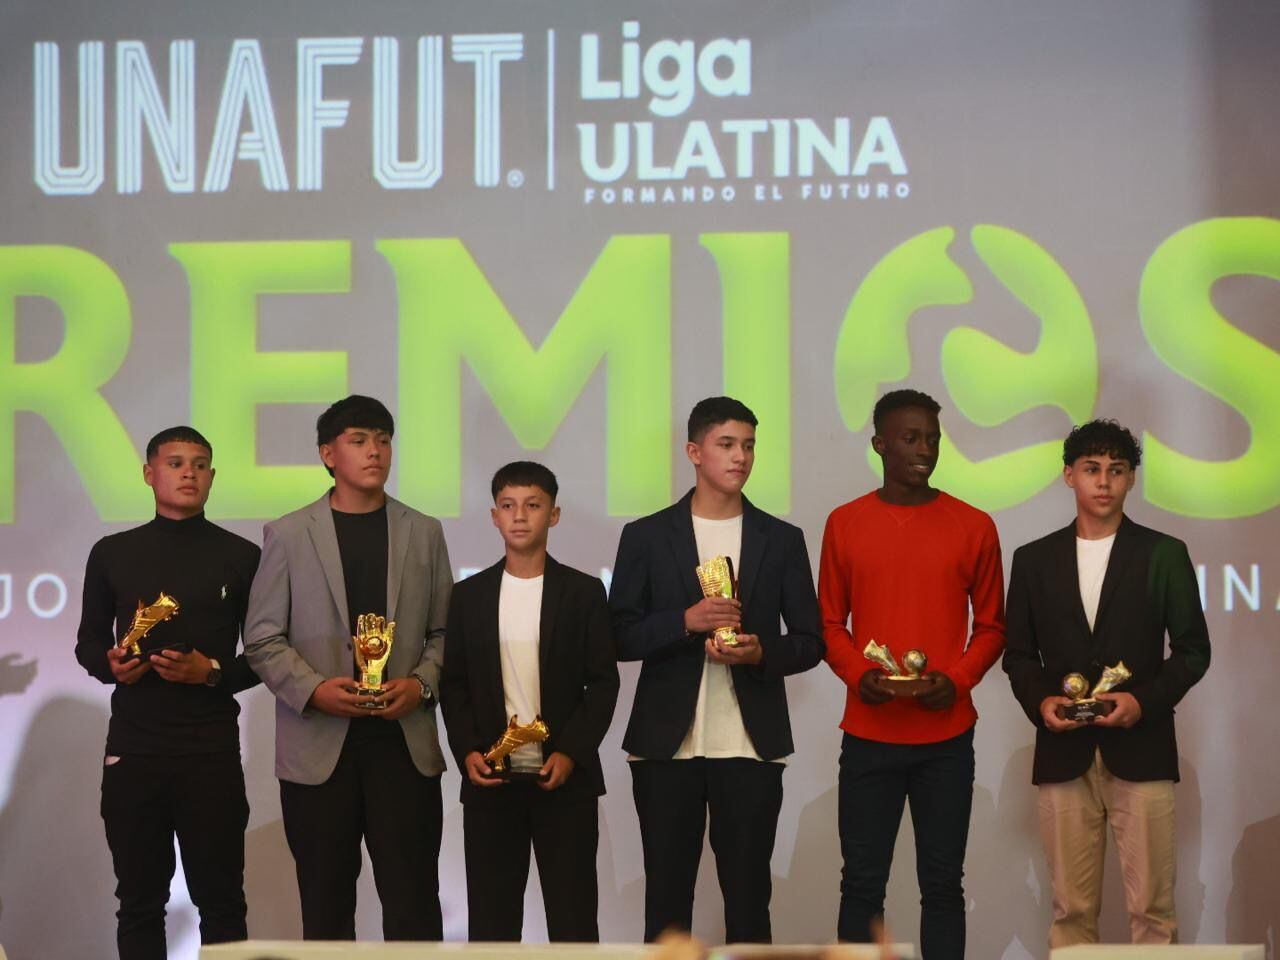 Santiago López (Saprissa), Dilan Morales (Saprissa), Dilan Angulo (Alajuelense), Nicolás Poveda (Alajuelense), Santiago Hinestroza (Sporting) y Aldo Flores (Cartaginés) fueron los premiados en U-14.